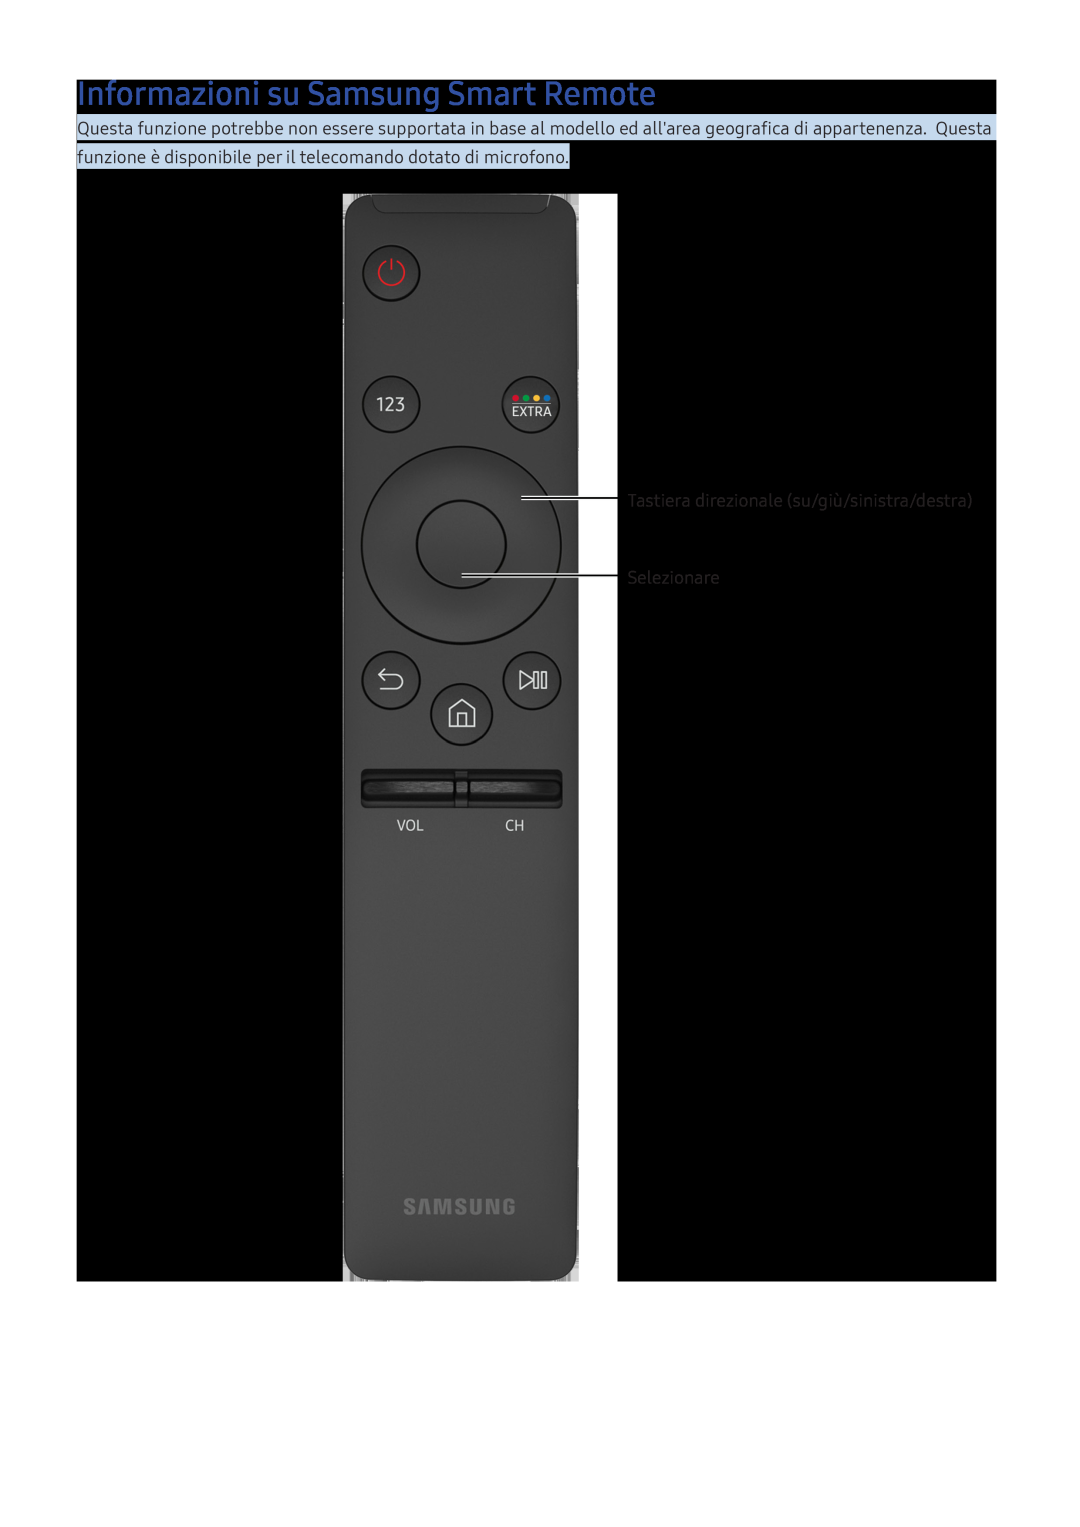 Samsung UE40K5670SSXXN manual Informazioni su Samsung Smart Remote, Tastiera direzionale su/giù/sinistra/destra Selezionare 